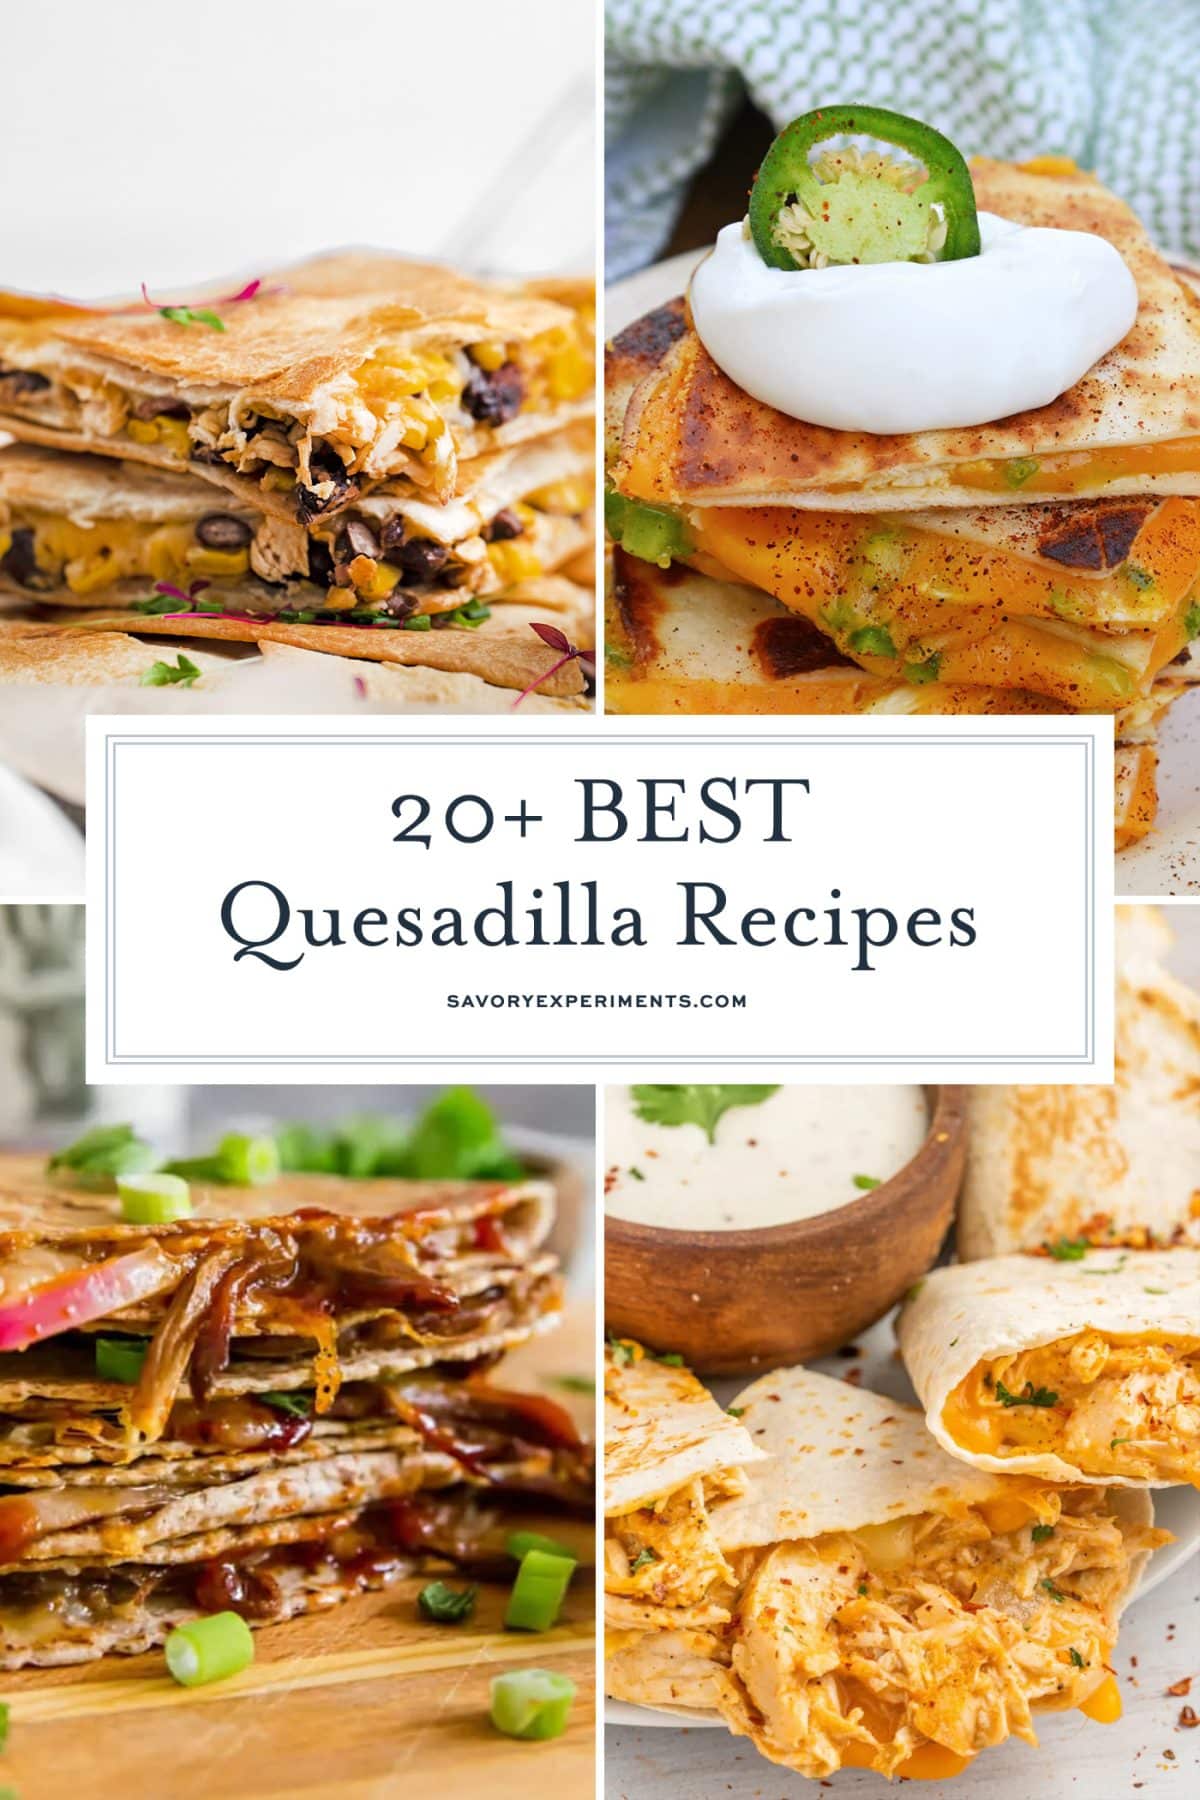 20+ BEST Quesadilla Recipes (Tons of Delicious Filling Options!)